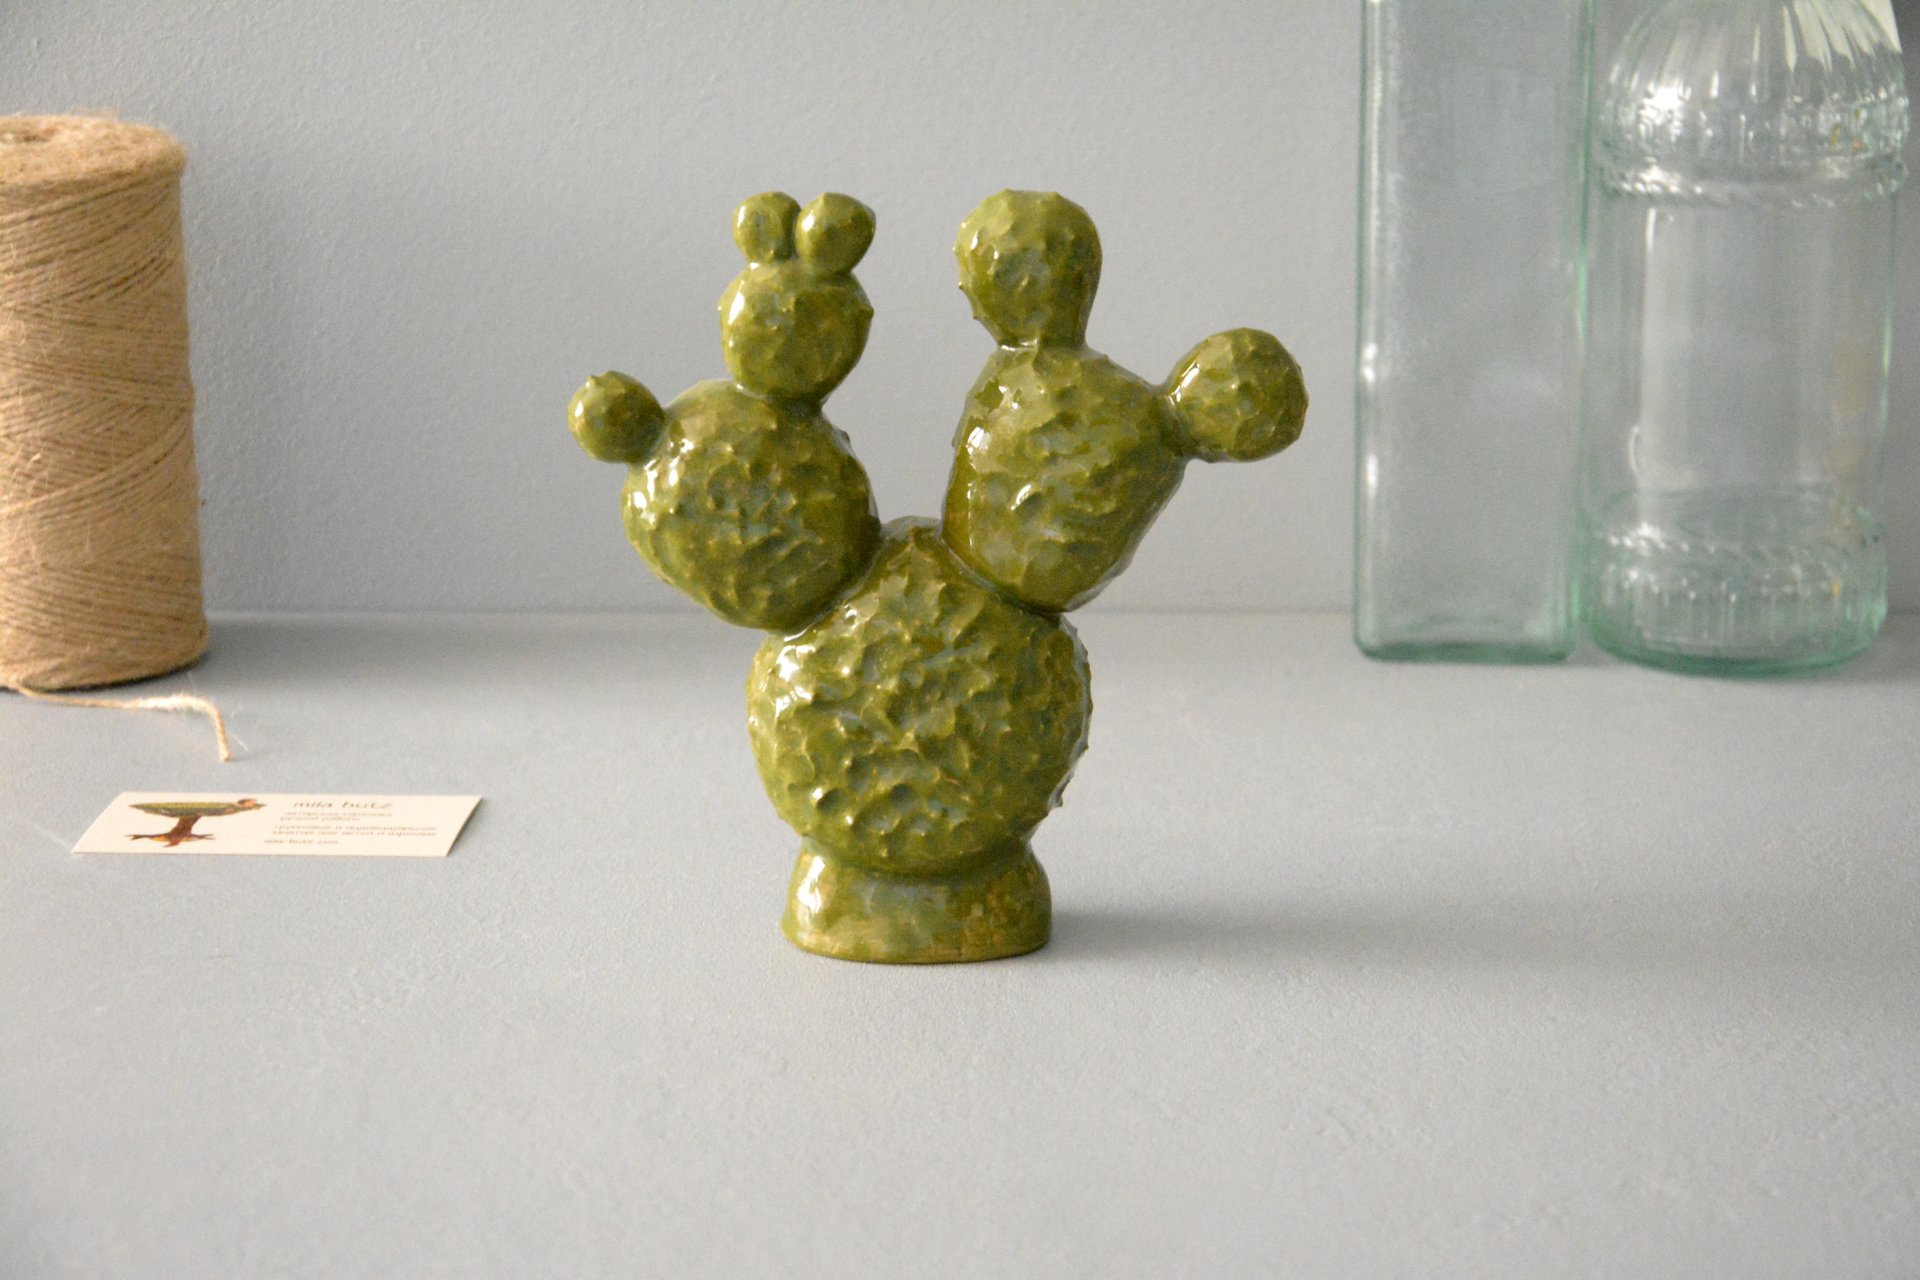 Cactus Opuntia - Cactus ceramic, height - 13 cm, photo 2 of 5.